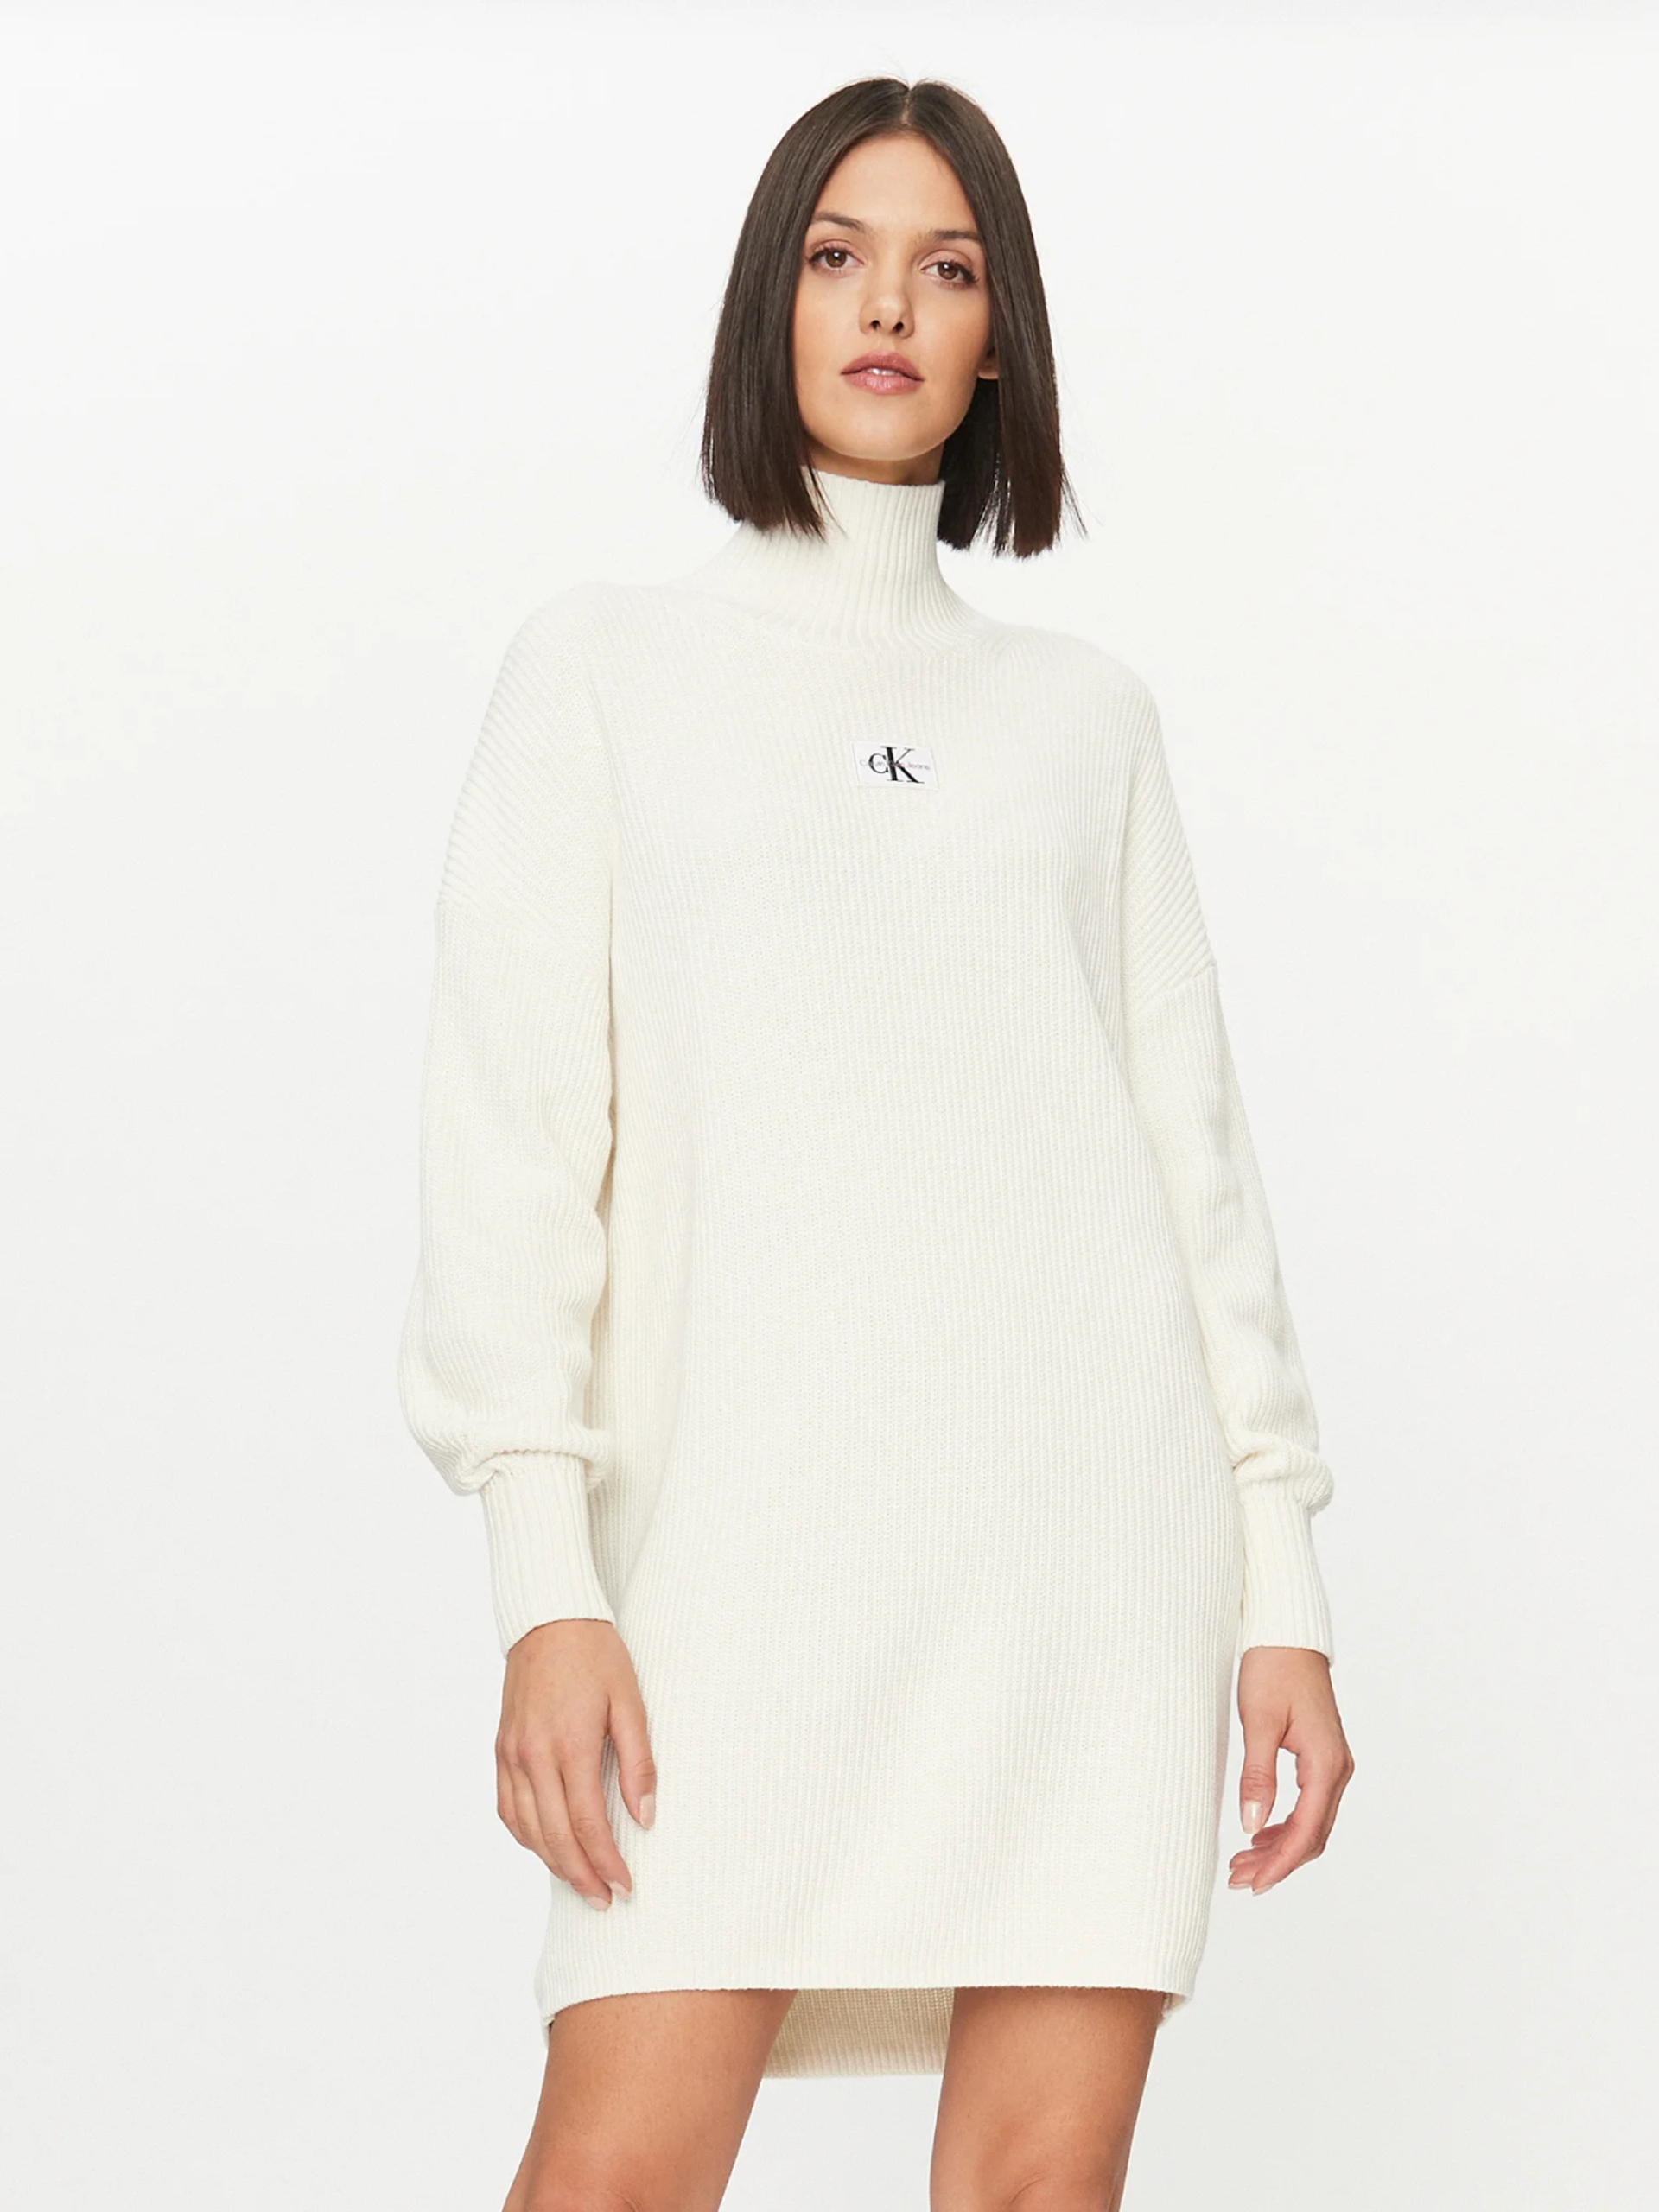 Calvin Klein dámské bílé úpletové šaty - M (YBI)